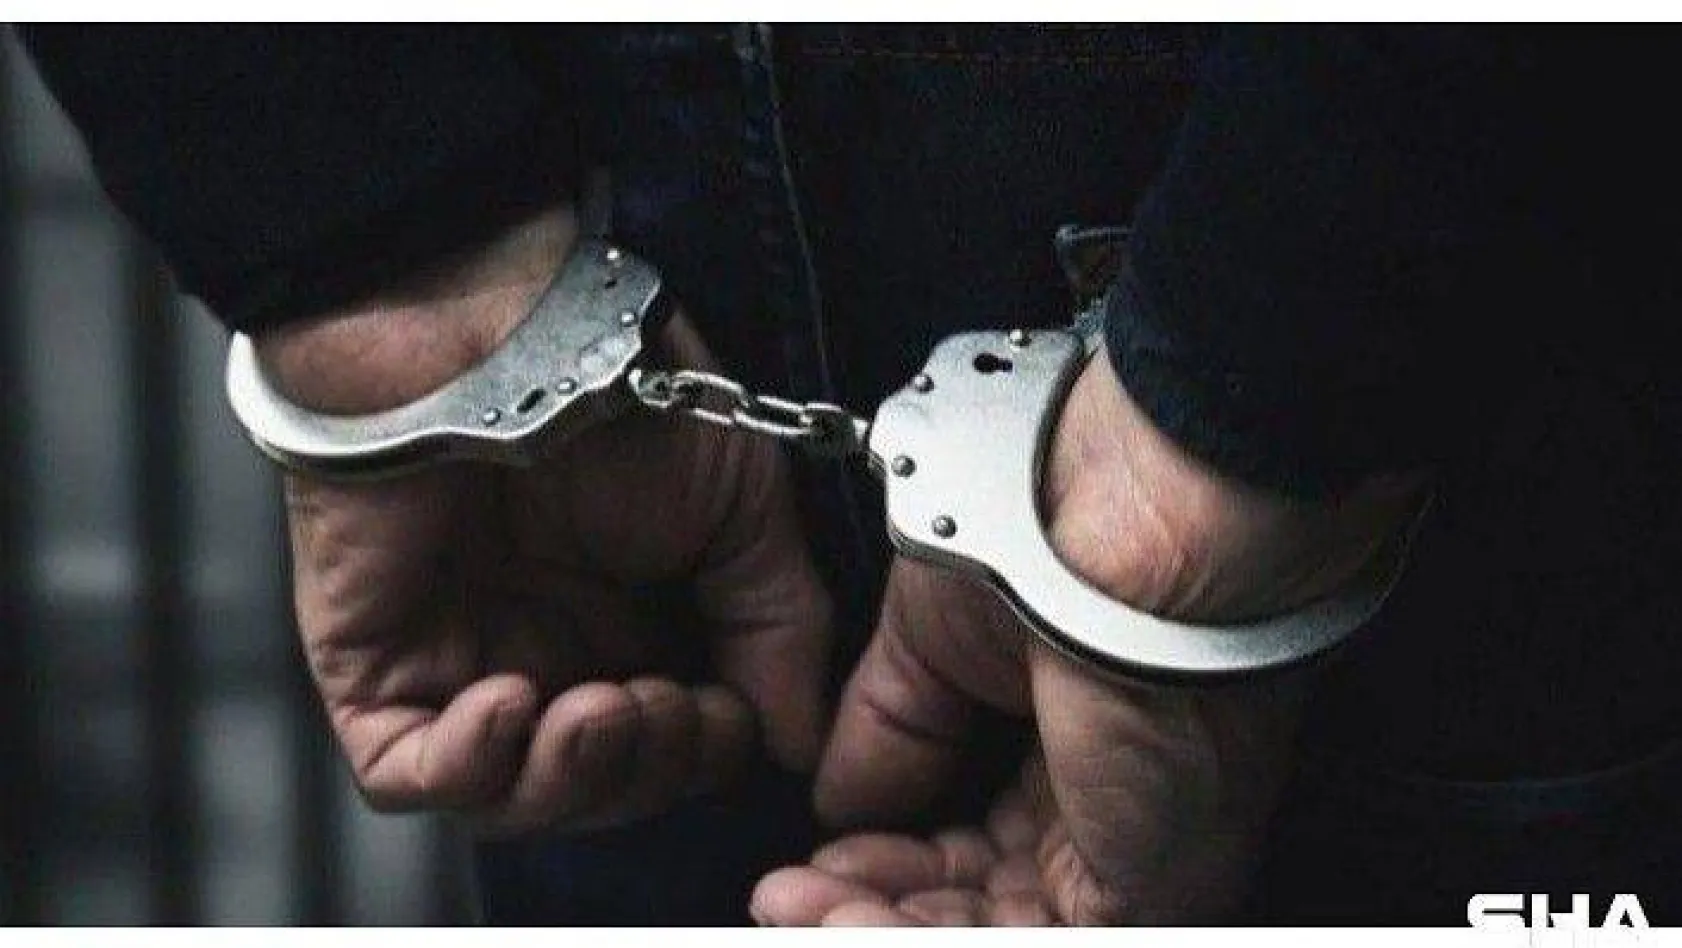 Sosyal medyadan paylaşım yaparak uyuşturucu satan şahıslar tutuklandı